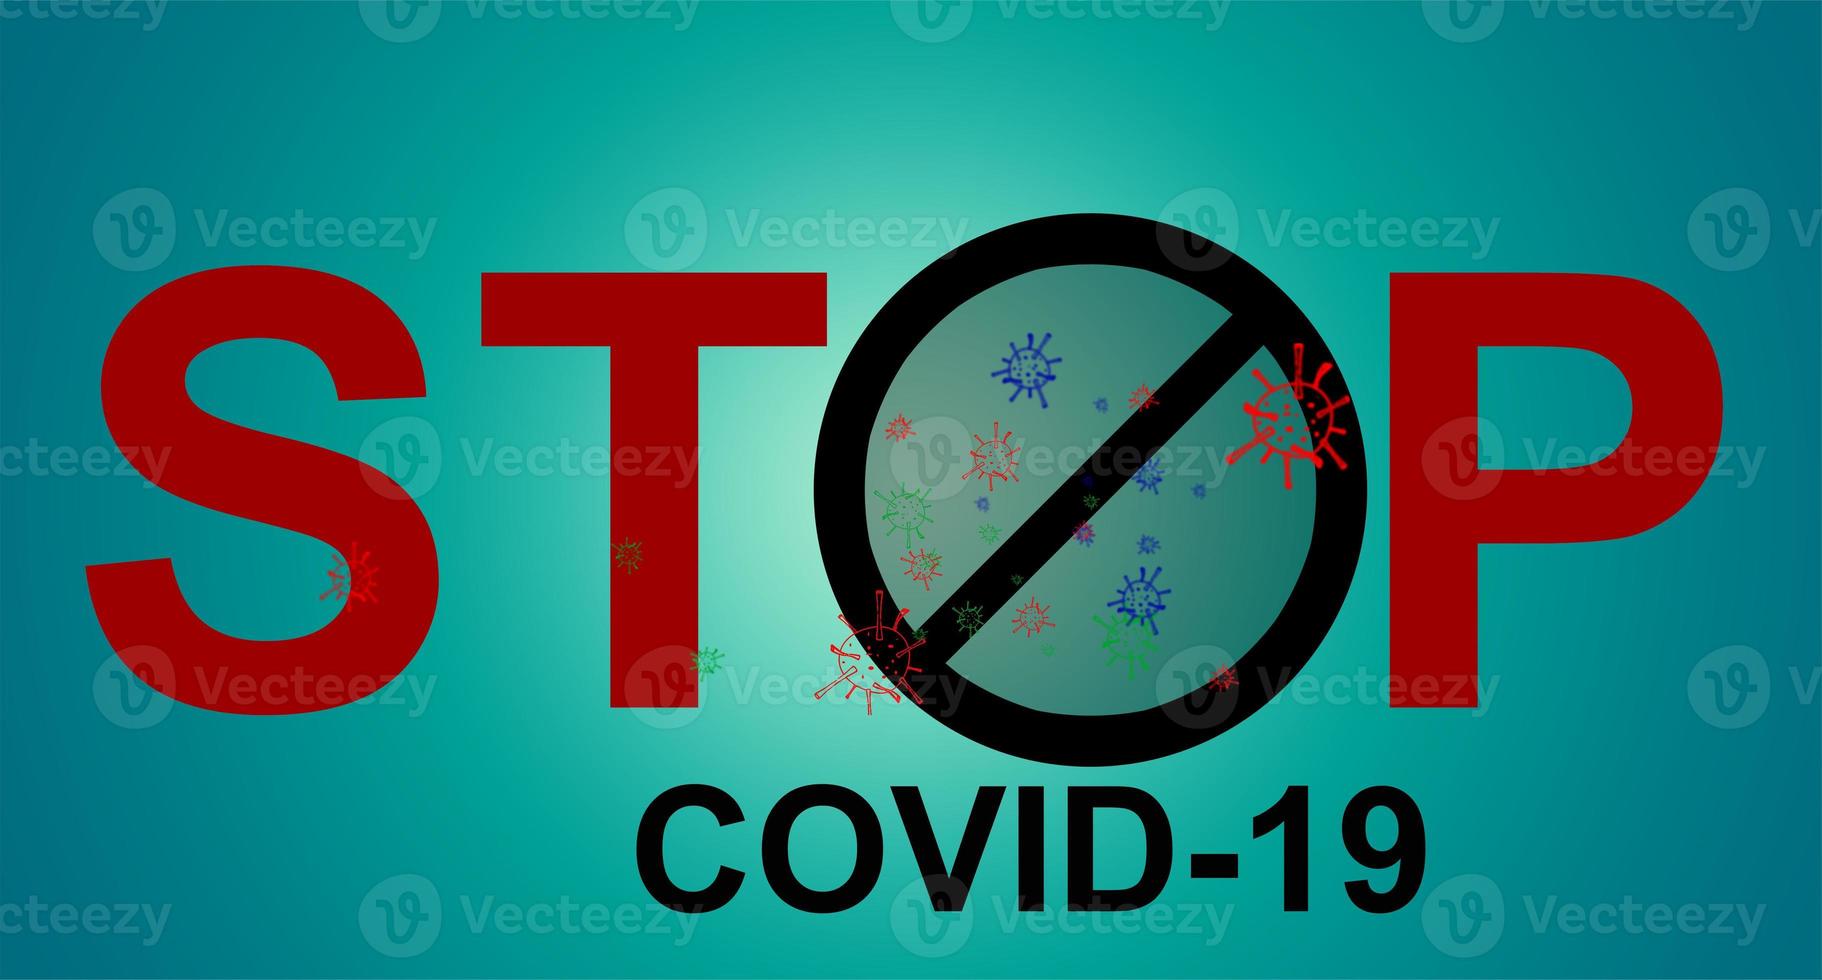 Pare covid-19 placa símbolo, vetor ilustração conceito coronavírus COVID-19. vírus wuhan a partir de China. foto